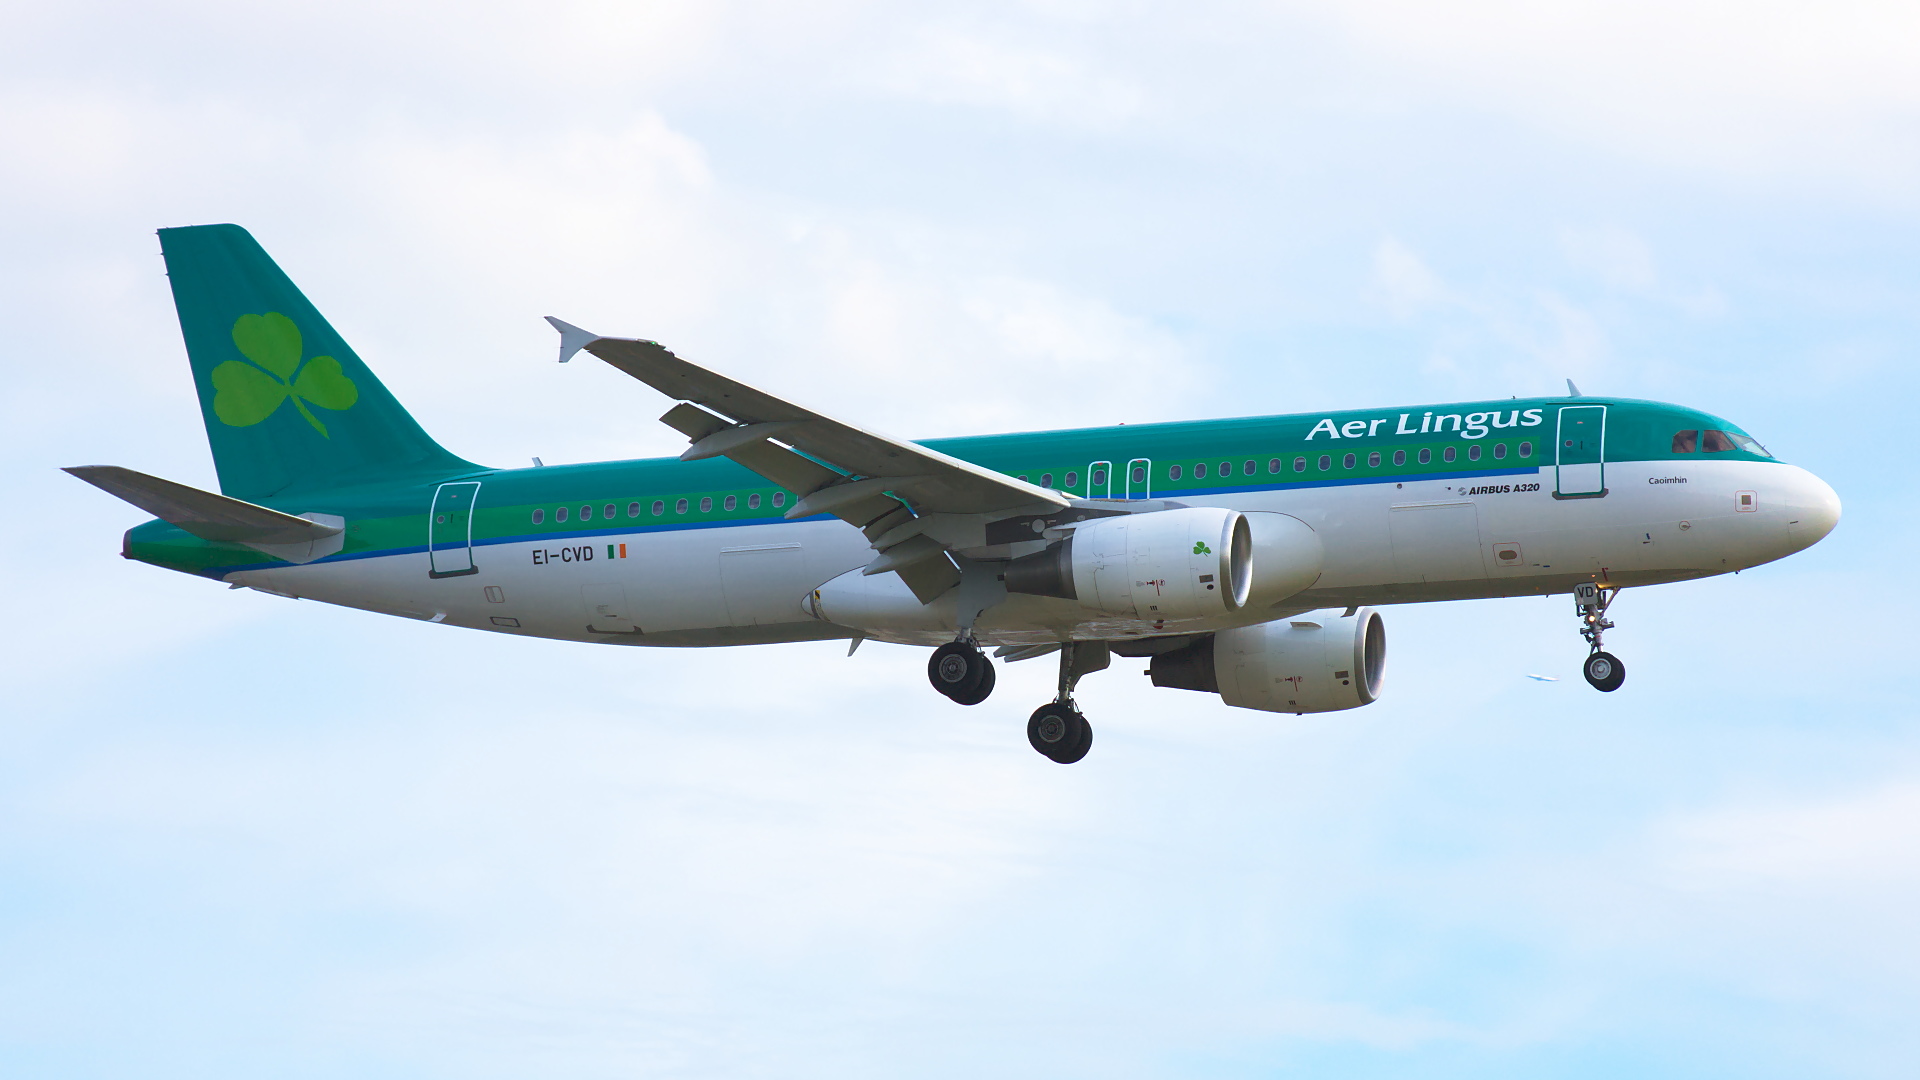 EI-CVD ✈ Aer Lingus Airbus A320-214 @ London-Heathrow